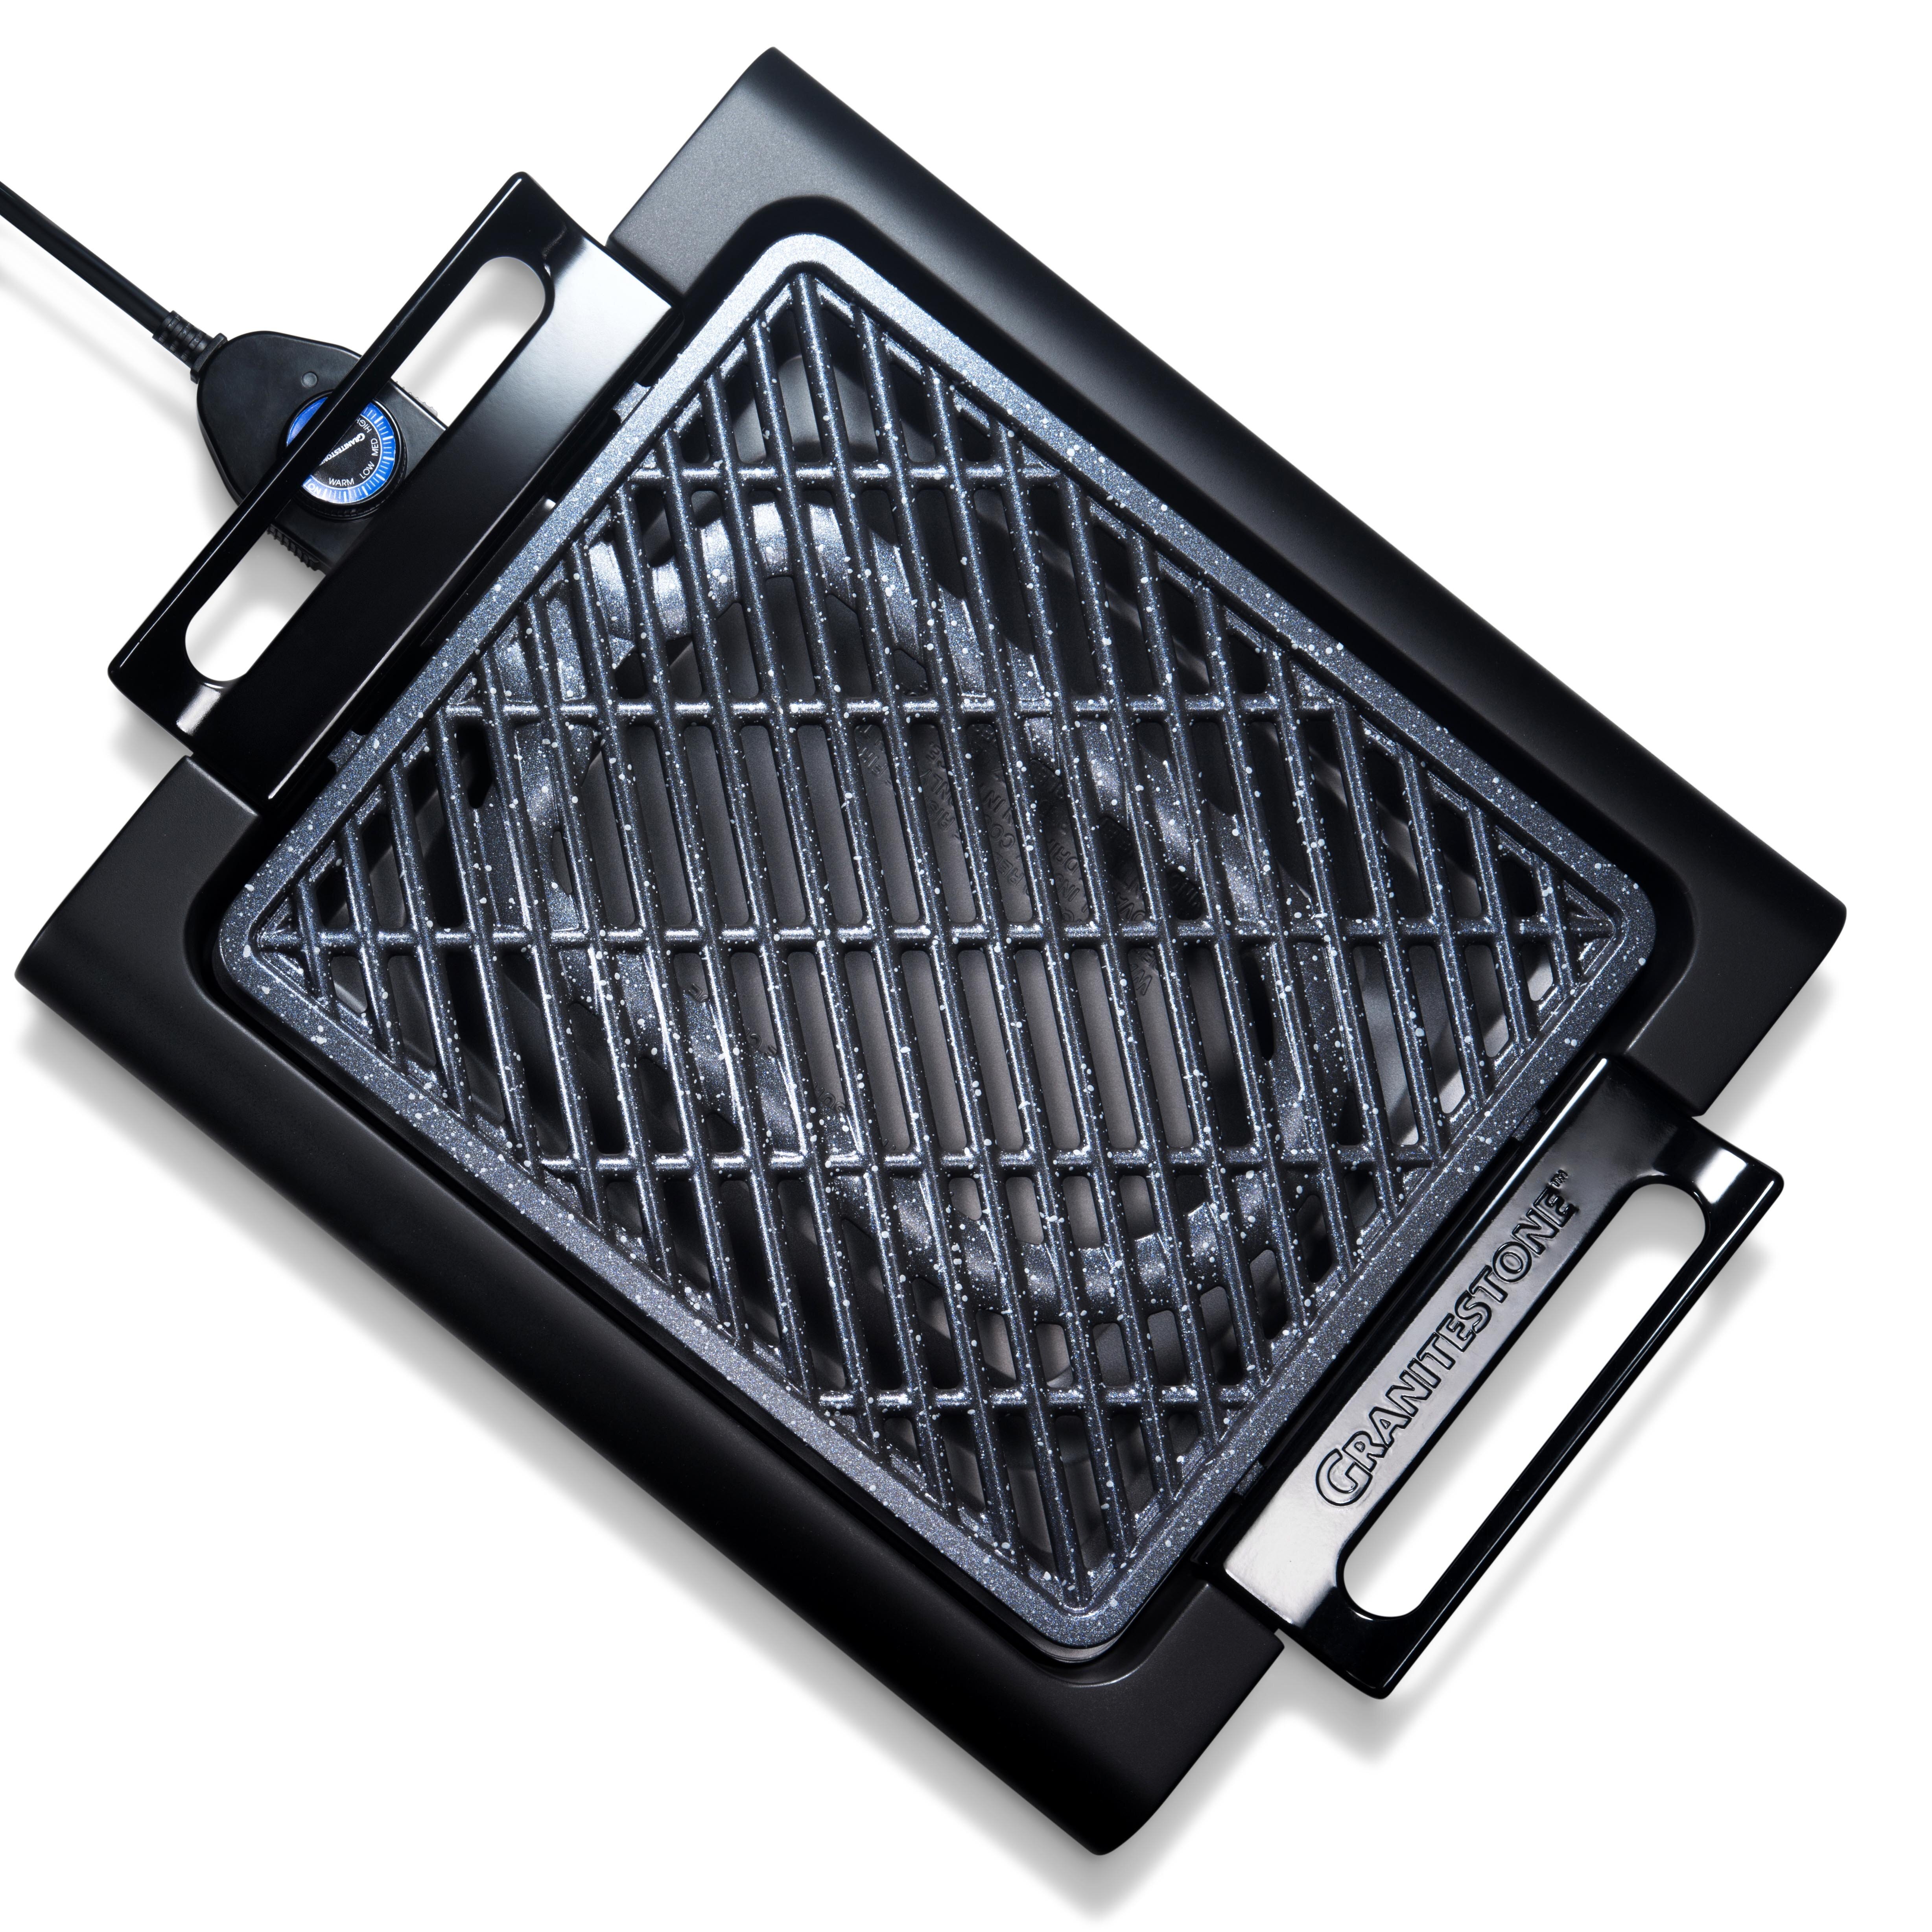 Chefman Electric Griddle, Fully Immersible & Dishwasher Safe, Black 